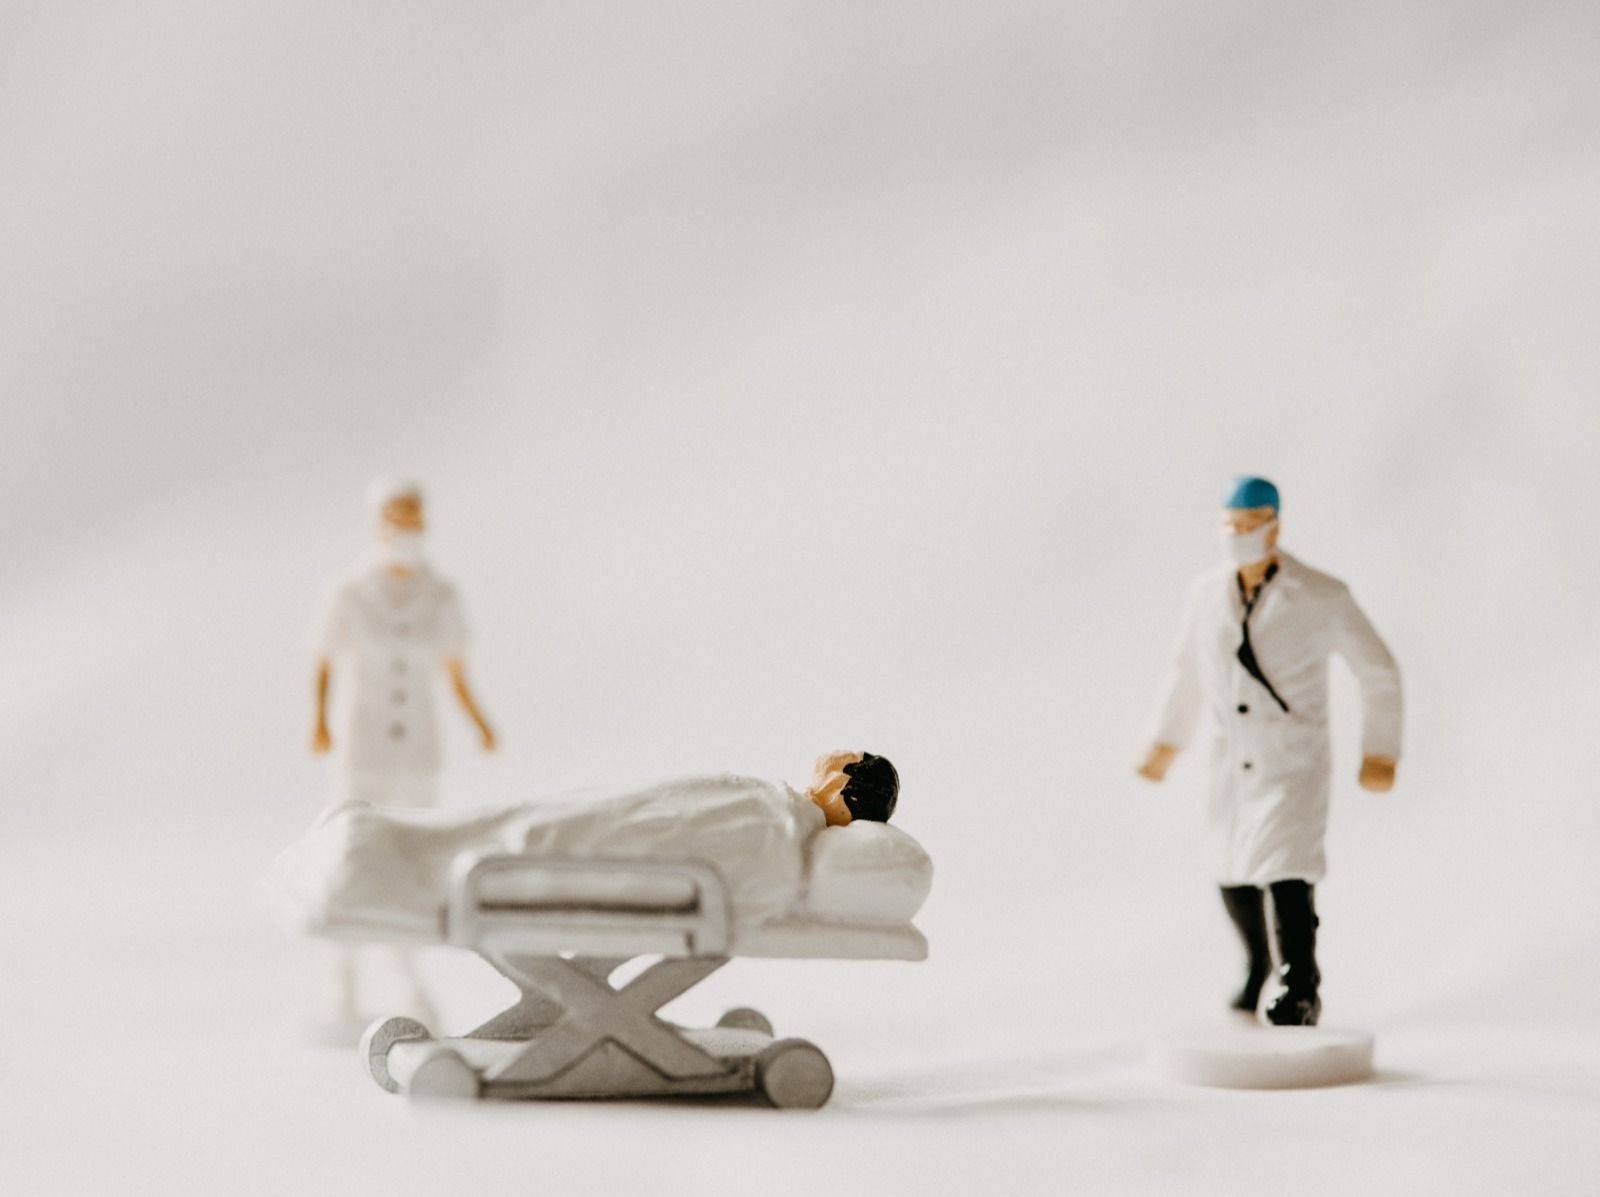 醫護人員模型解釋香港醫療通脹高企